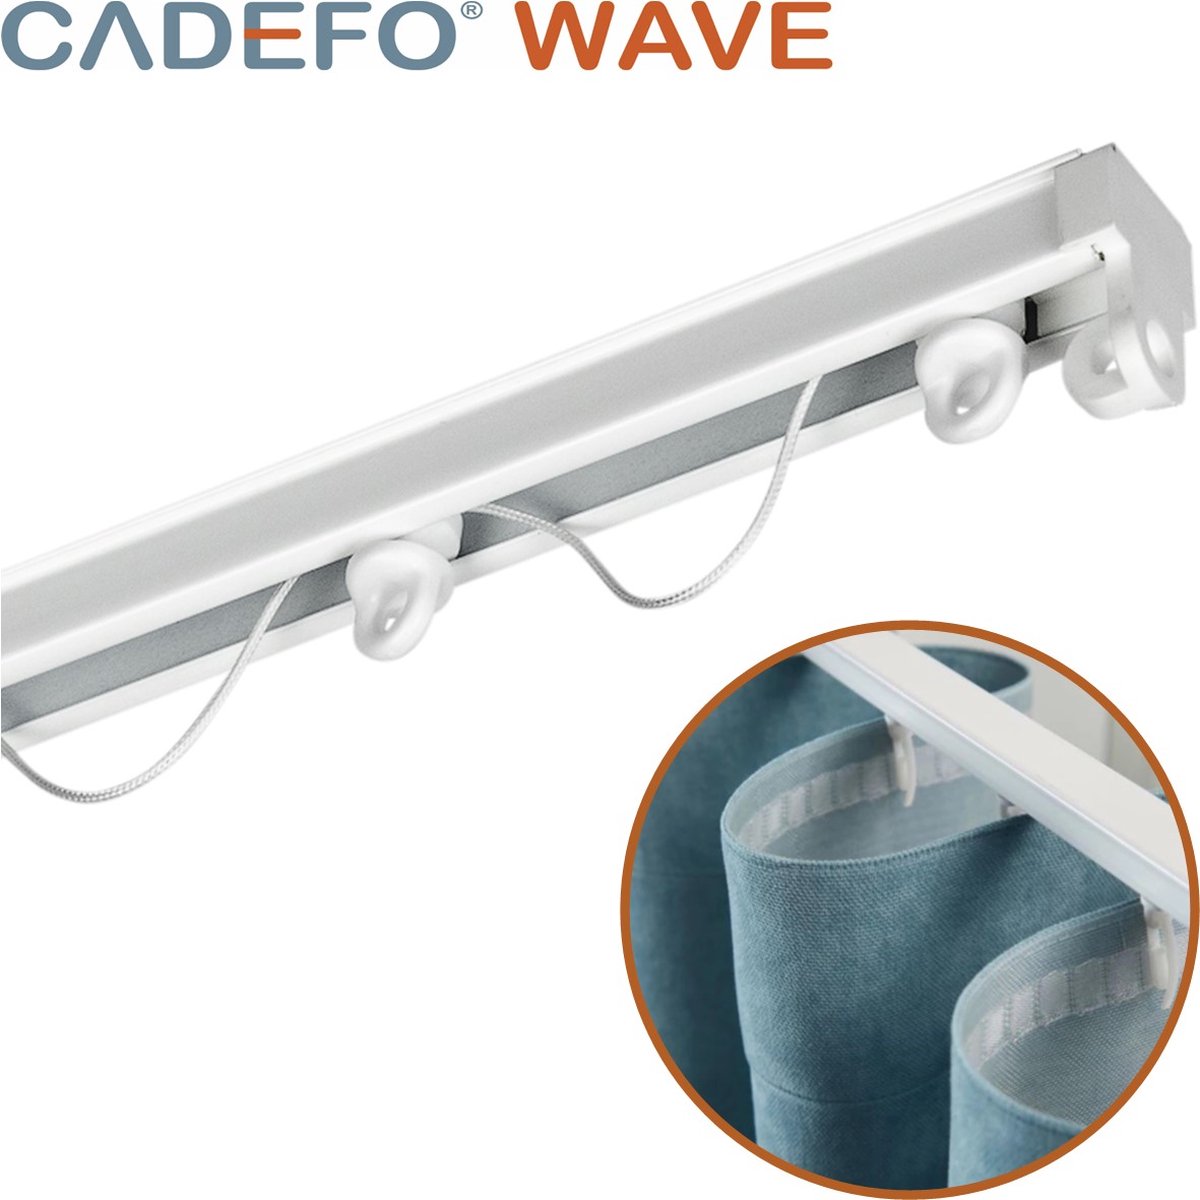 CADEFO WAVE (401 - 450 cm) Gordijnrails - Compleet op maat! - UIT 1 STUK - Leverbaar tot 6 meter - Plafondbevestiging - Lengte 410 cm